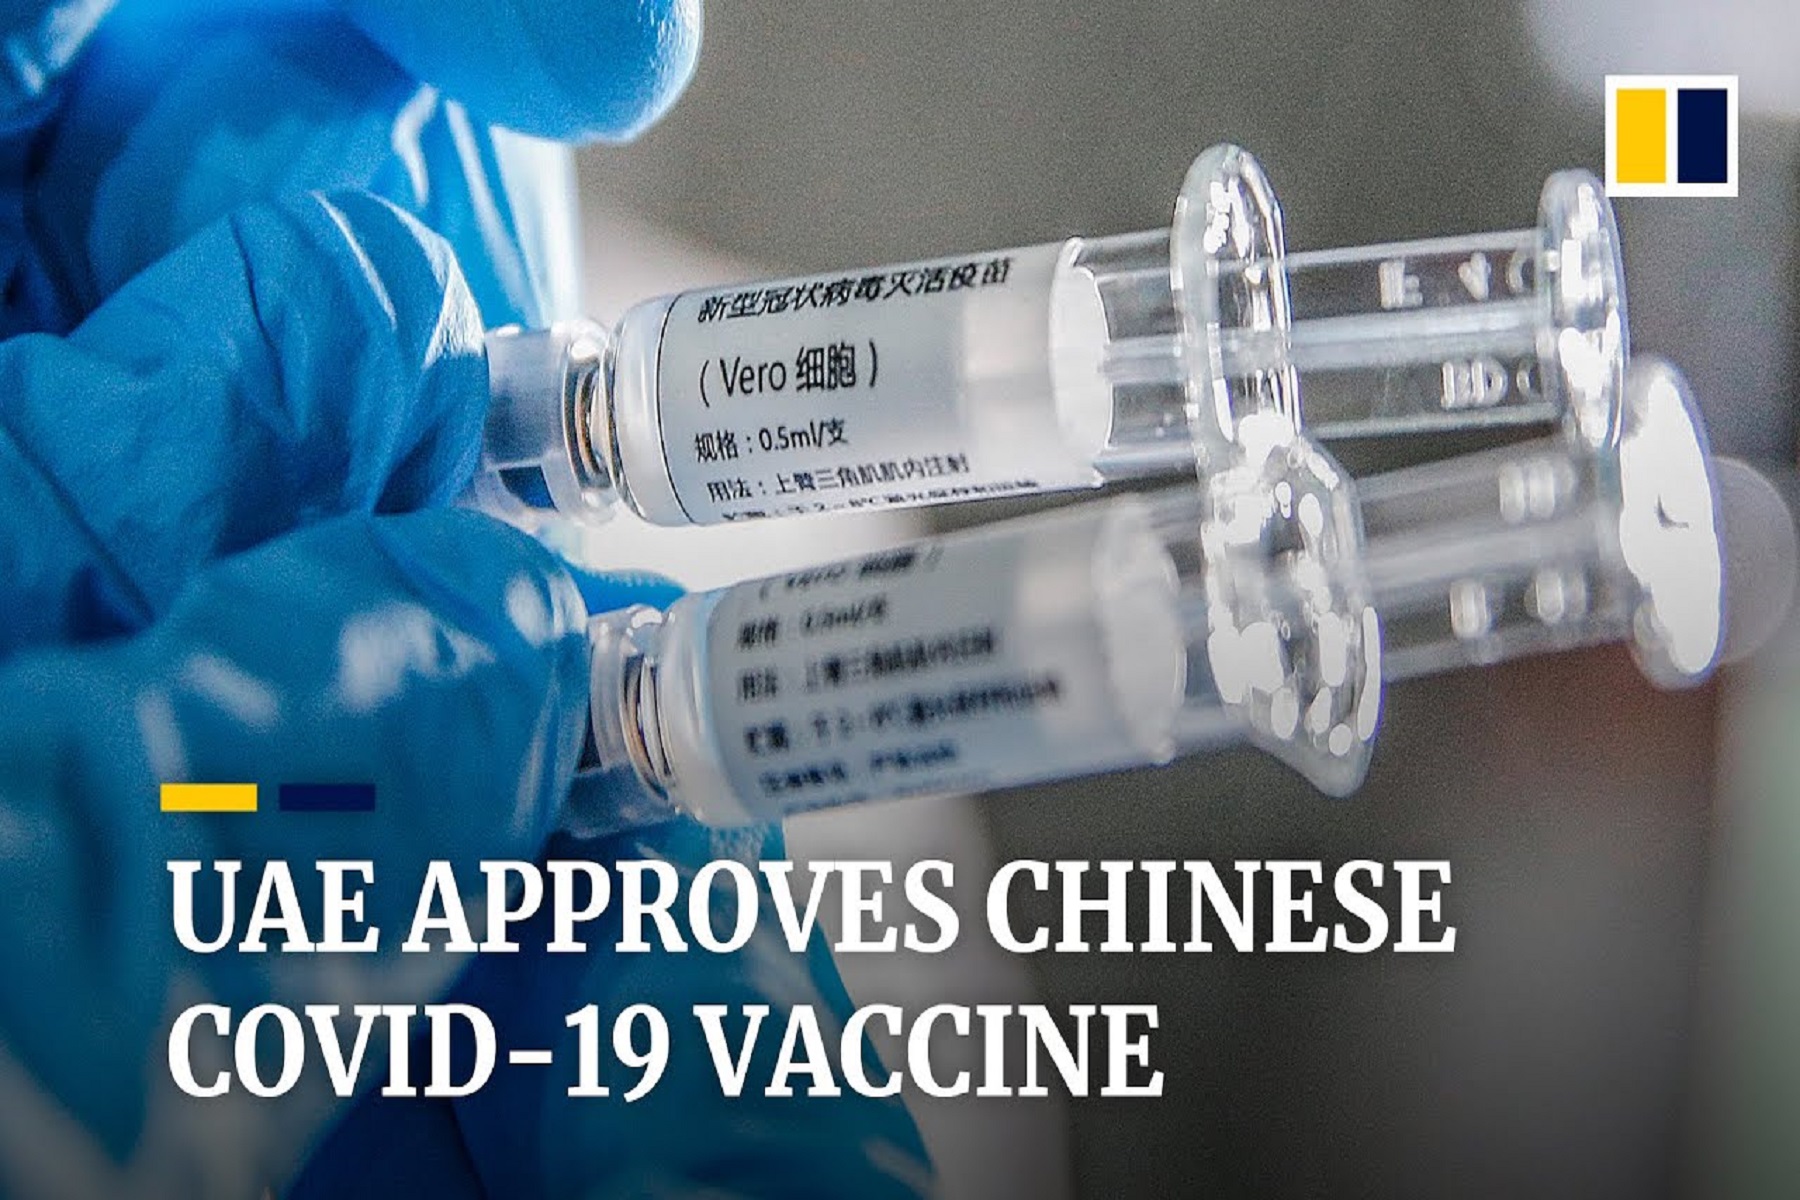 Κίνα Κορωνοϊός: Τα εμβόλια covid-19 της Sinopharm εμφανίζονται ασφαλή & αποτελεσματικά, σύμφωνα με μελέτες